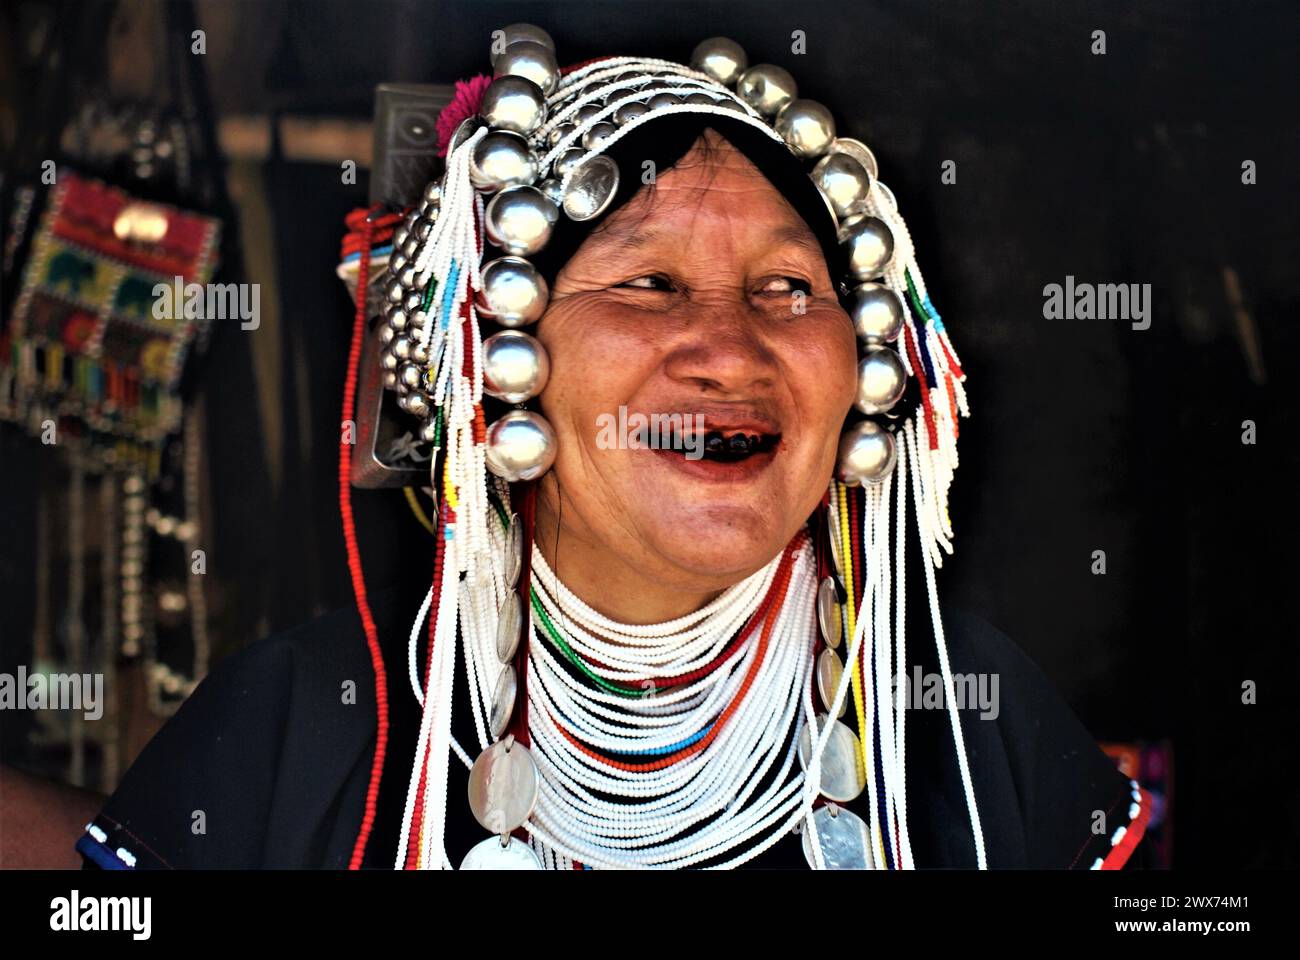 akha, femmes avec coiffe et vêtements traditionnels dans le village de Chiang Rai, dans le nord de la Thaïlande Banque D'Images